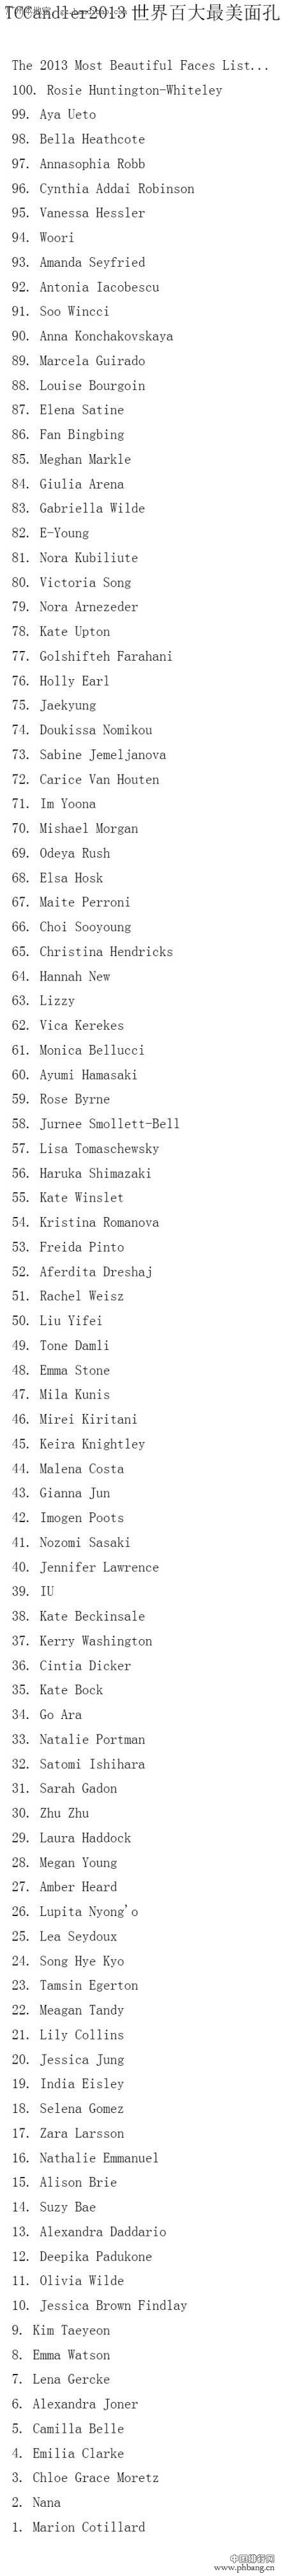 2013年全球百大最美脸蛋排行榜全名单